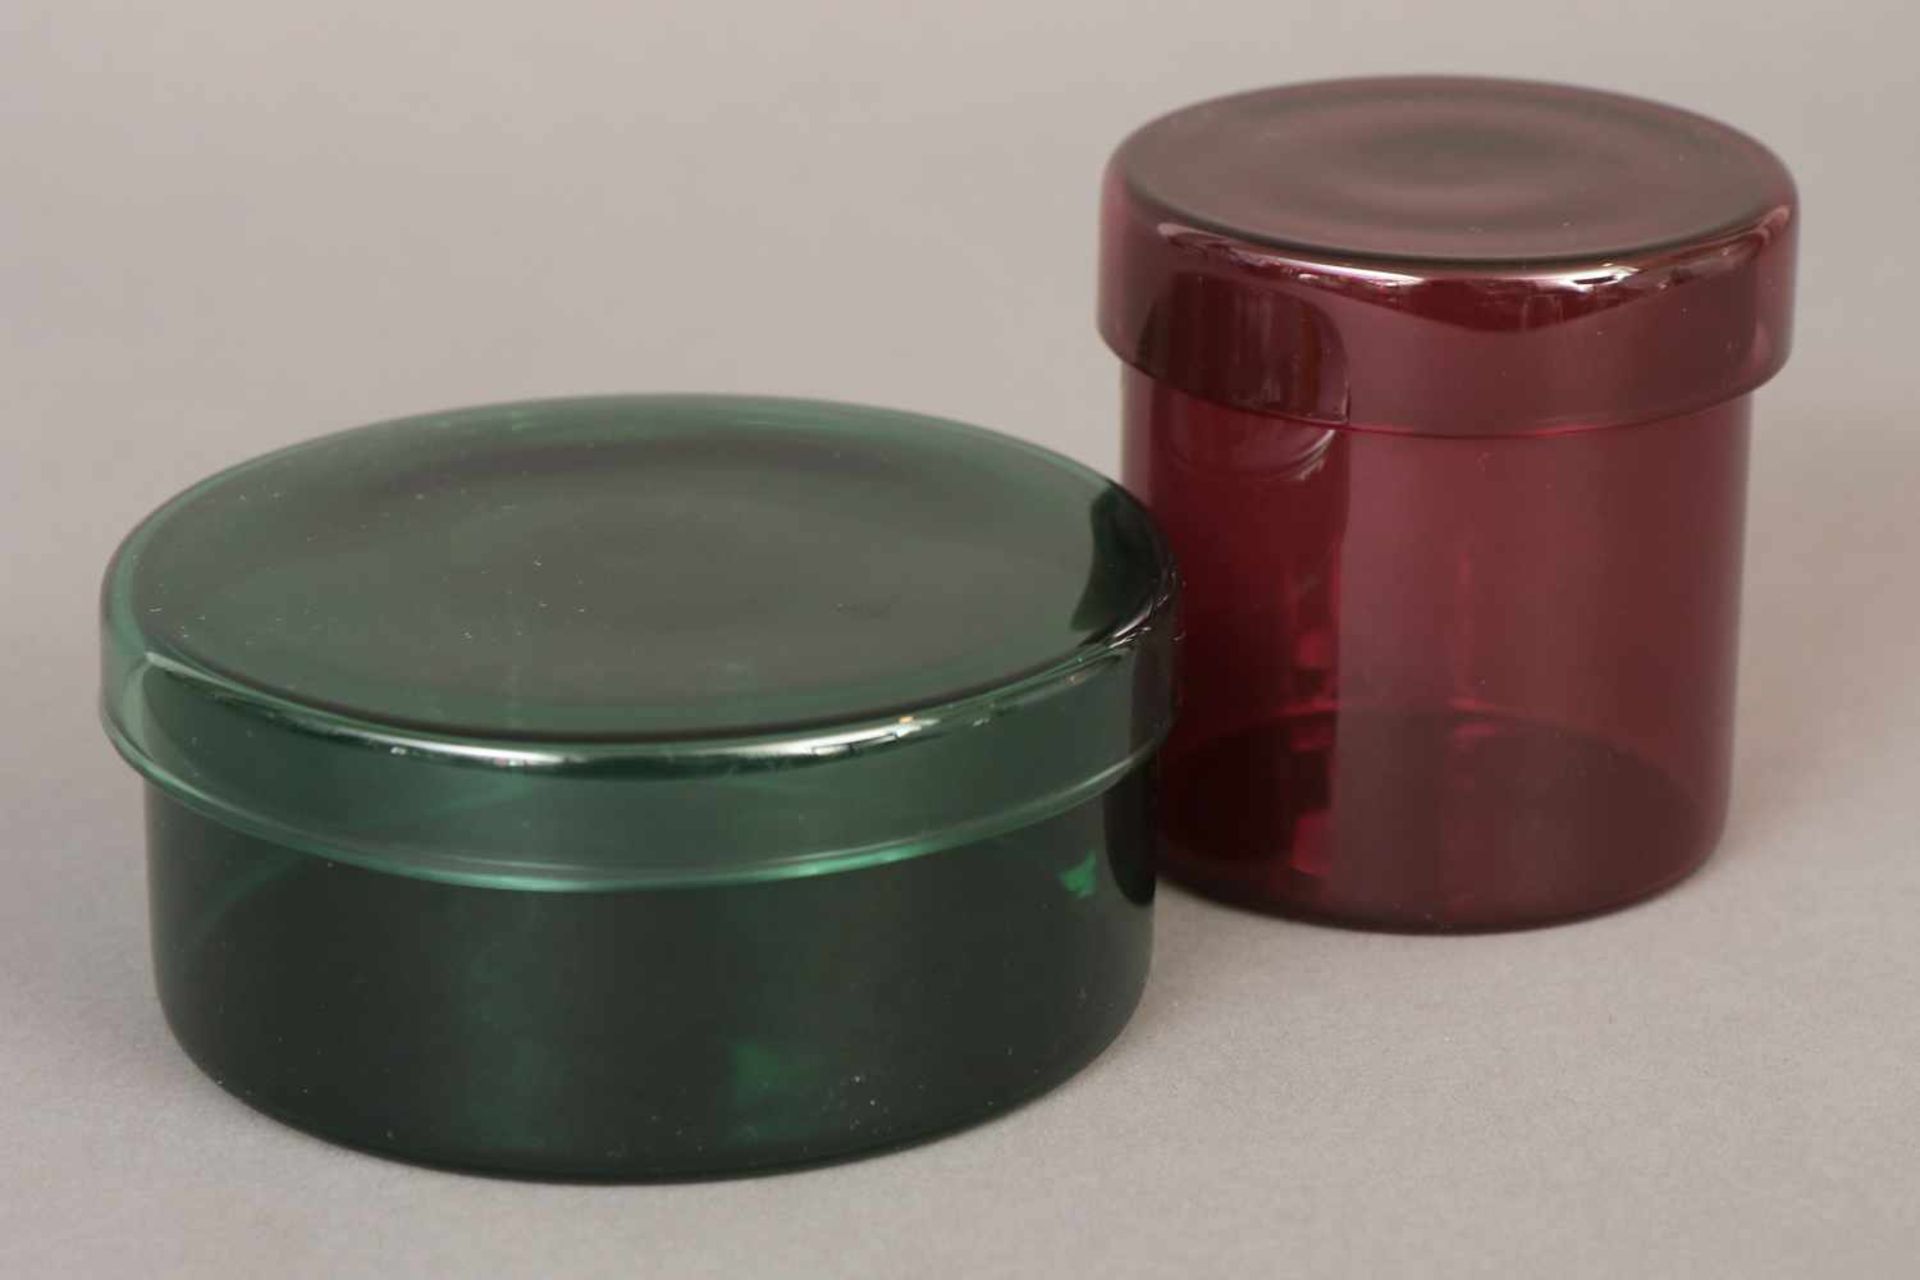 Paar Glasgefäße/Deckeldosenunbekannter Hersteller, 1x rotes, 1x grünes Glas, zylindrische Form mit